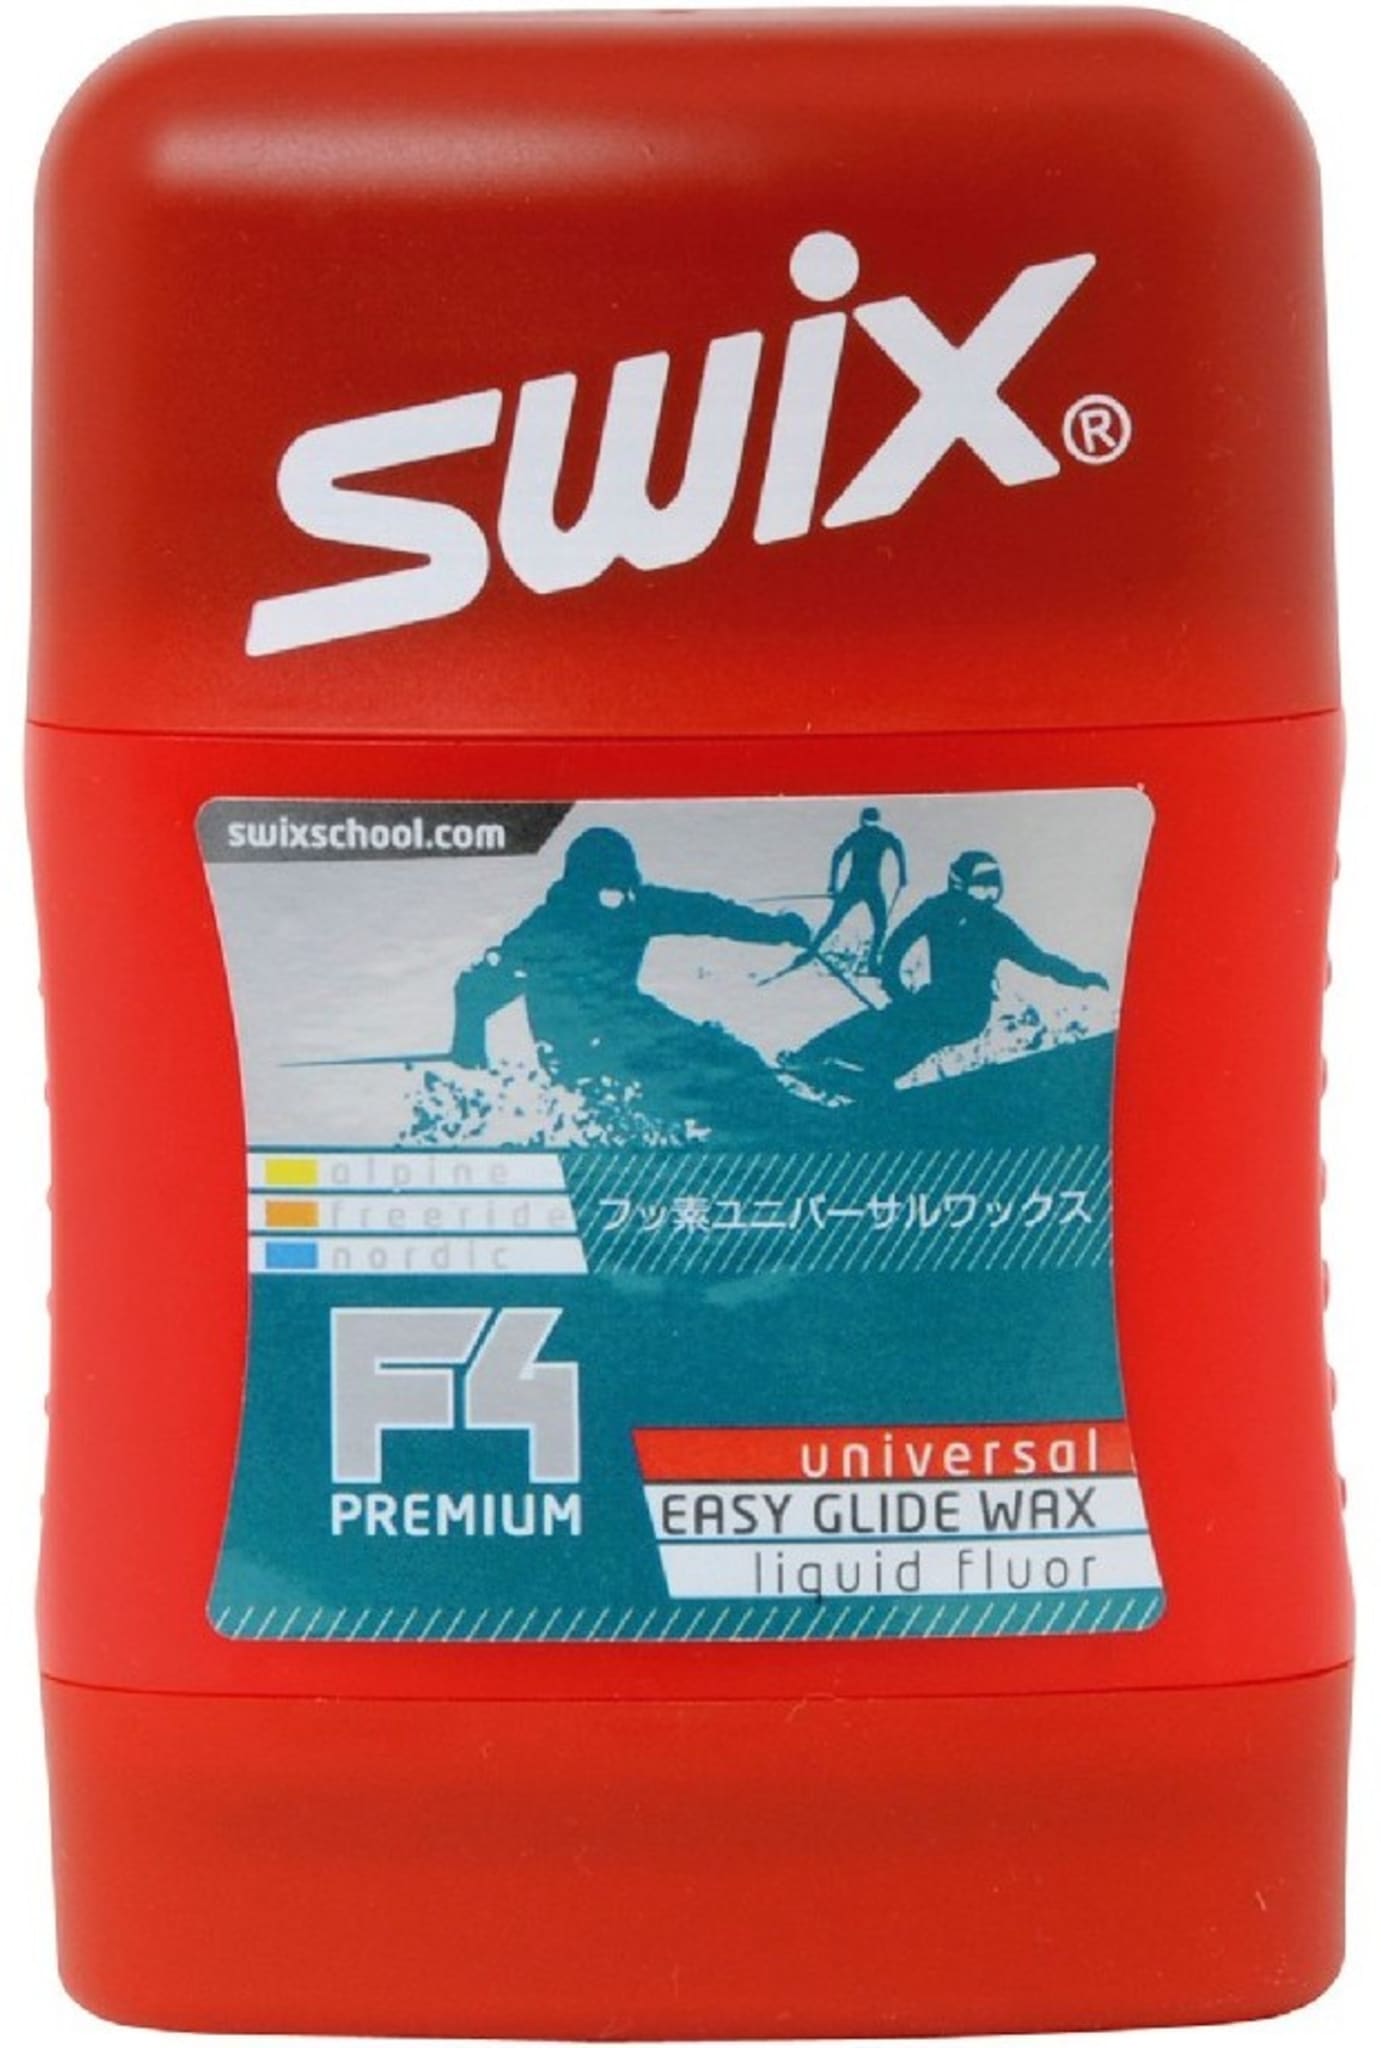 Swix f4. Мазь скольжения Swix f4 Universal. Парафин Swix f4 Premium. Swix Universal easy Glide Wax f4. Мазь скольжения Swix Glide Wax f4-100c Swix.